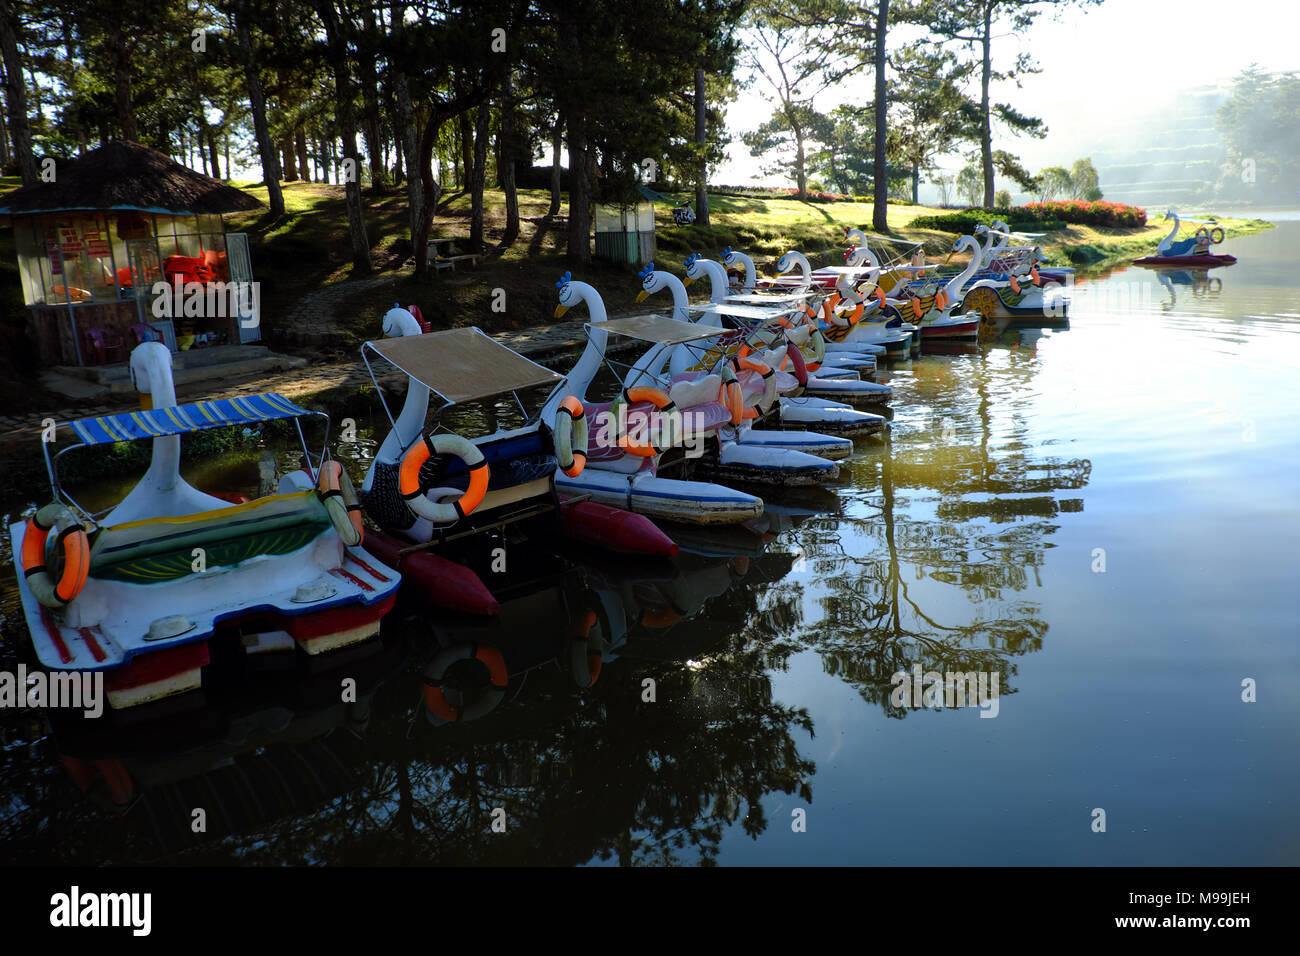 Gruppe von Ente Boot, Fahrzeug- und auf dem Wasser für Tourismus entspannen, reflektieren über Wasser, Ziel für Reisen Da Lat, Vietnam, See in einem Pinienwald Stockfoto